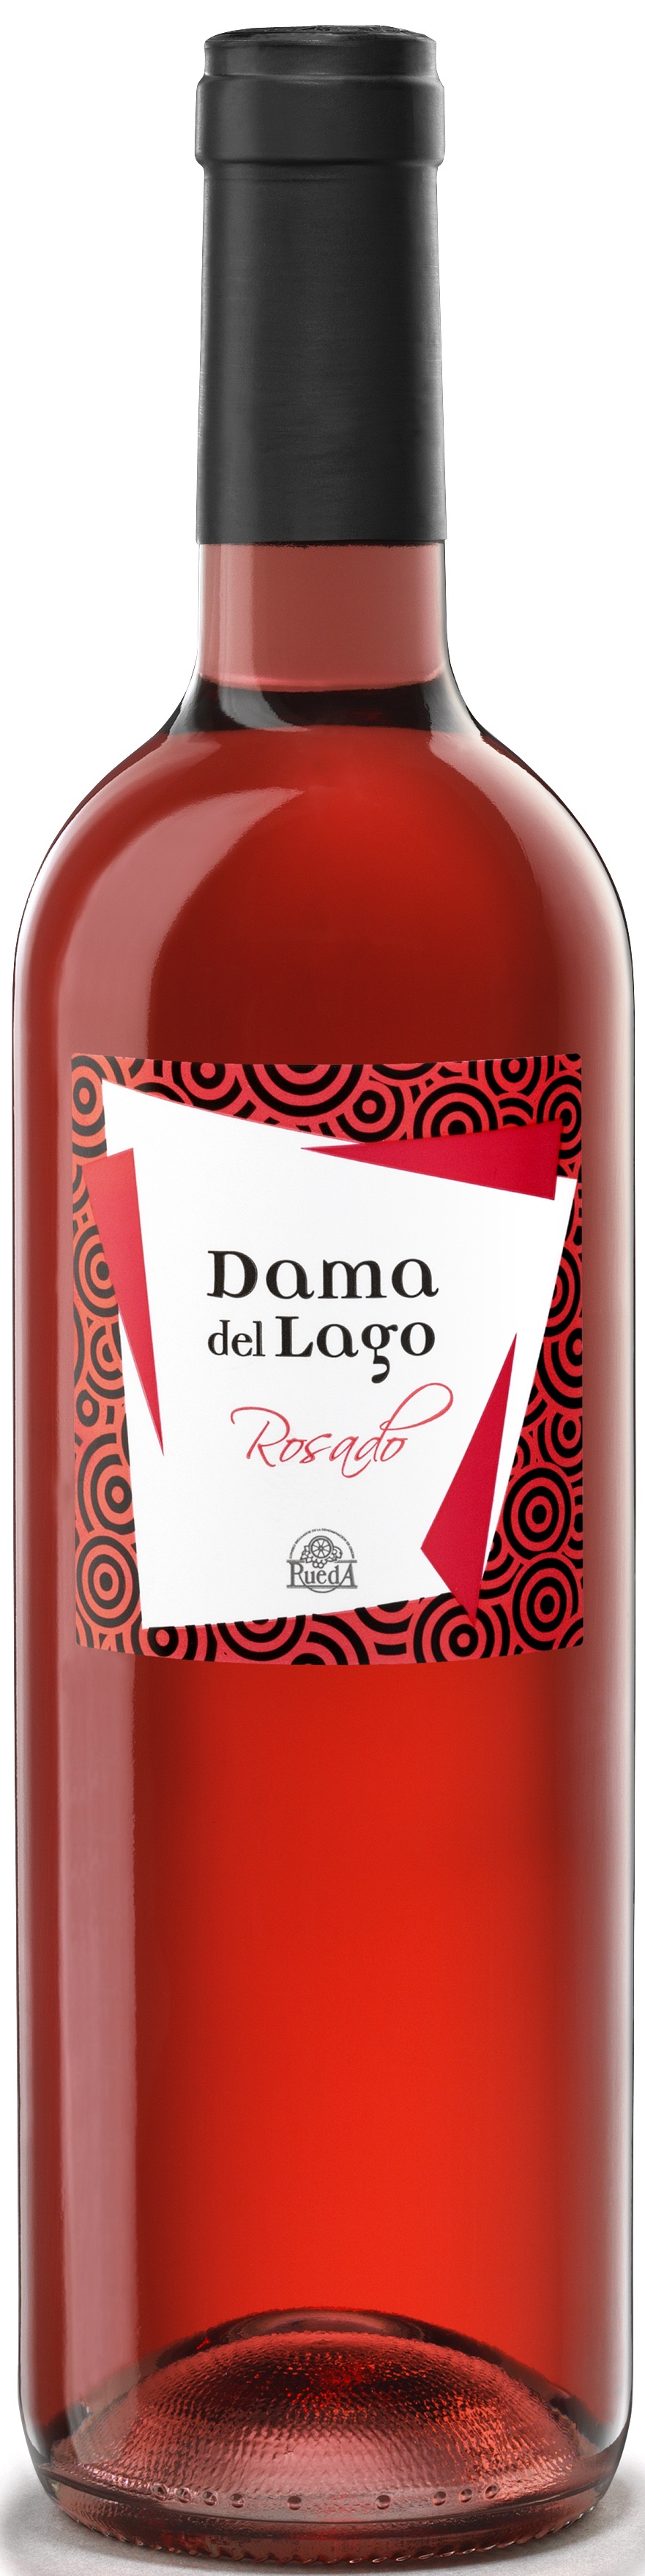 Bild von der Weinflasche Dama del Lago Rosado